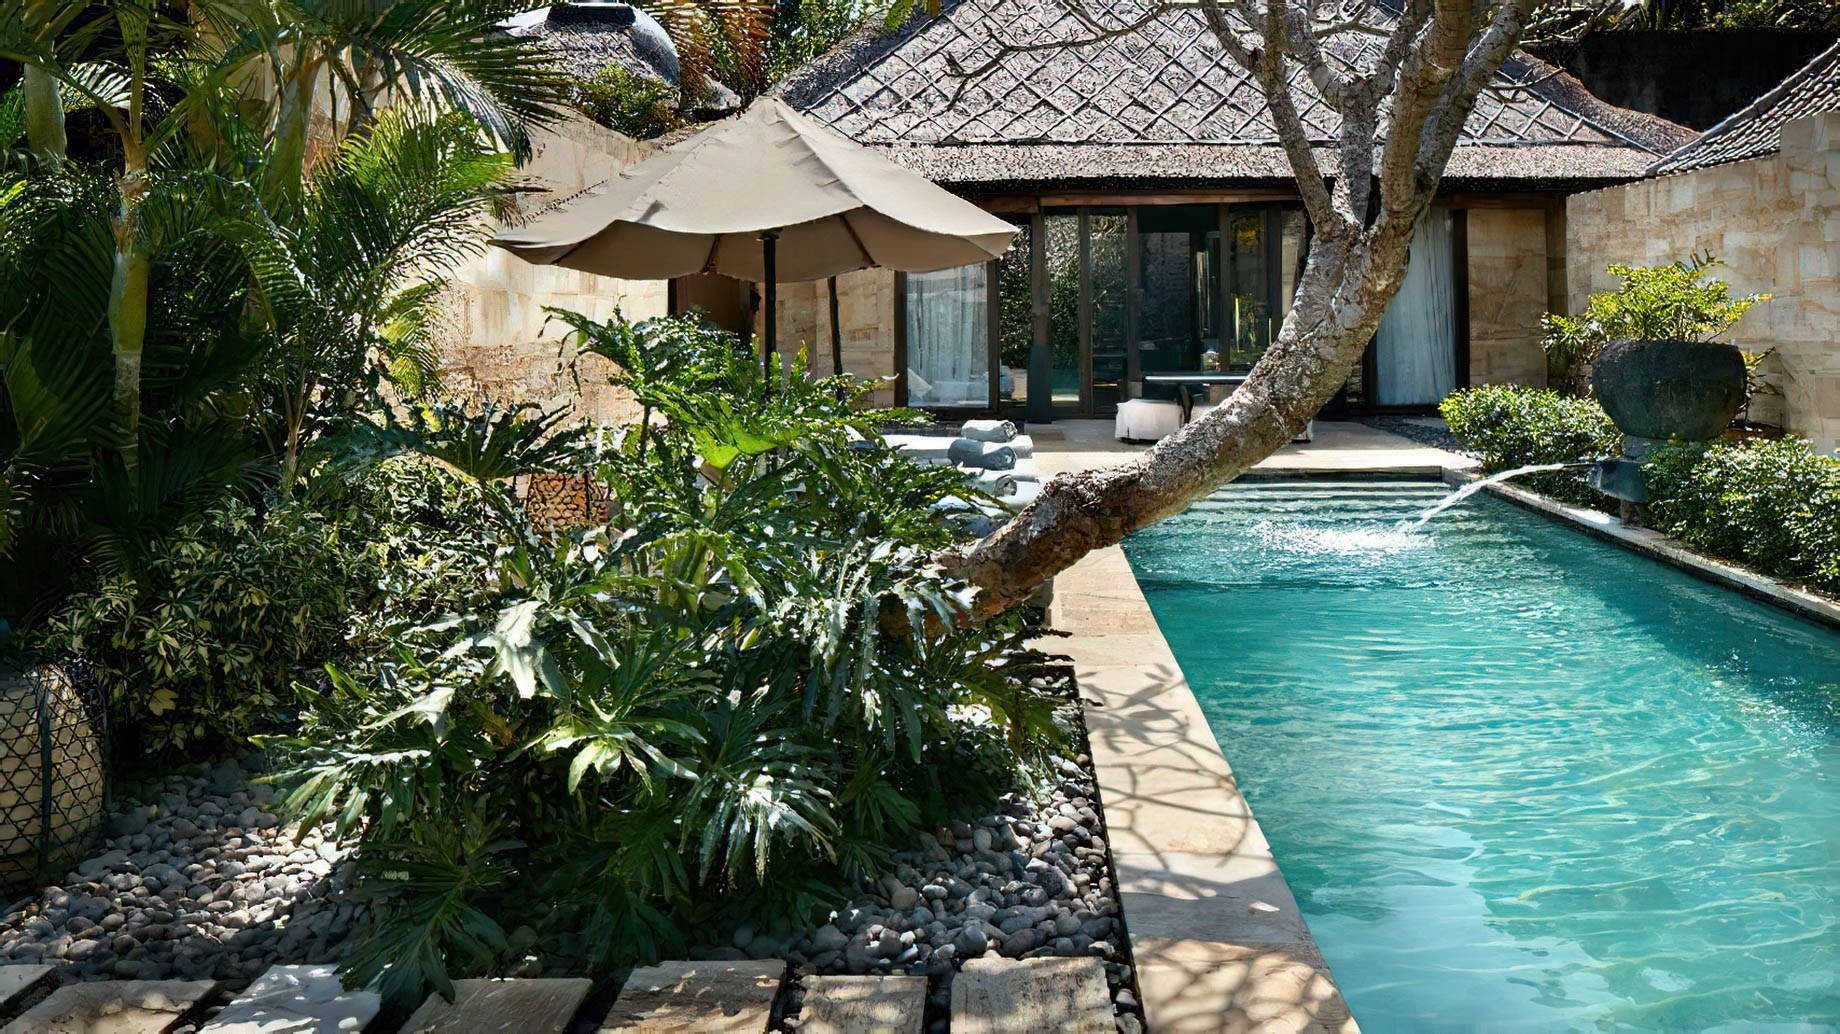 Bvlgari Resort Bali – Uluwatu, Bali, Indonesia – Ocean View Villa Pool